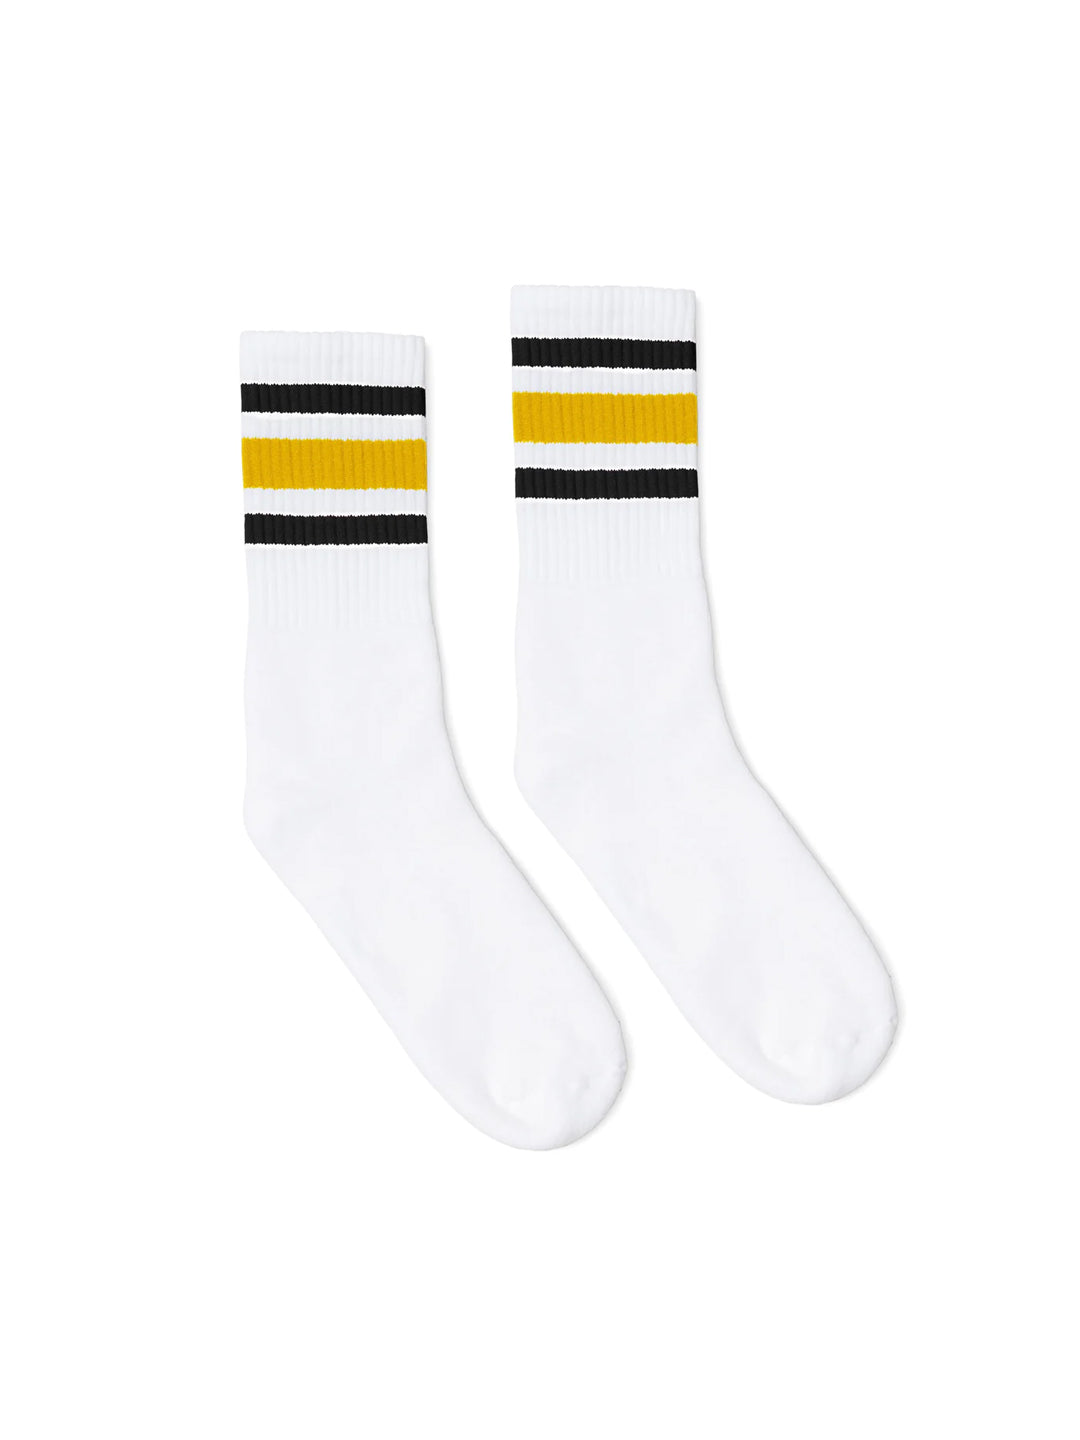 Black & Gold Stripe Socks